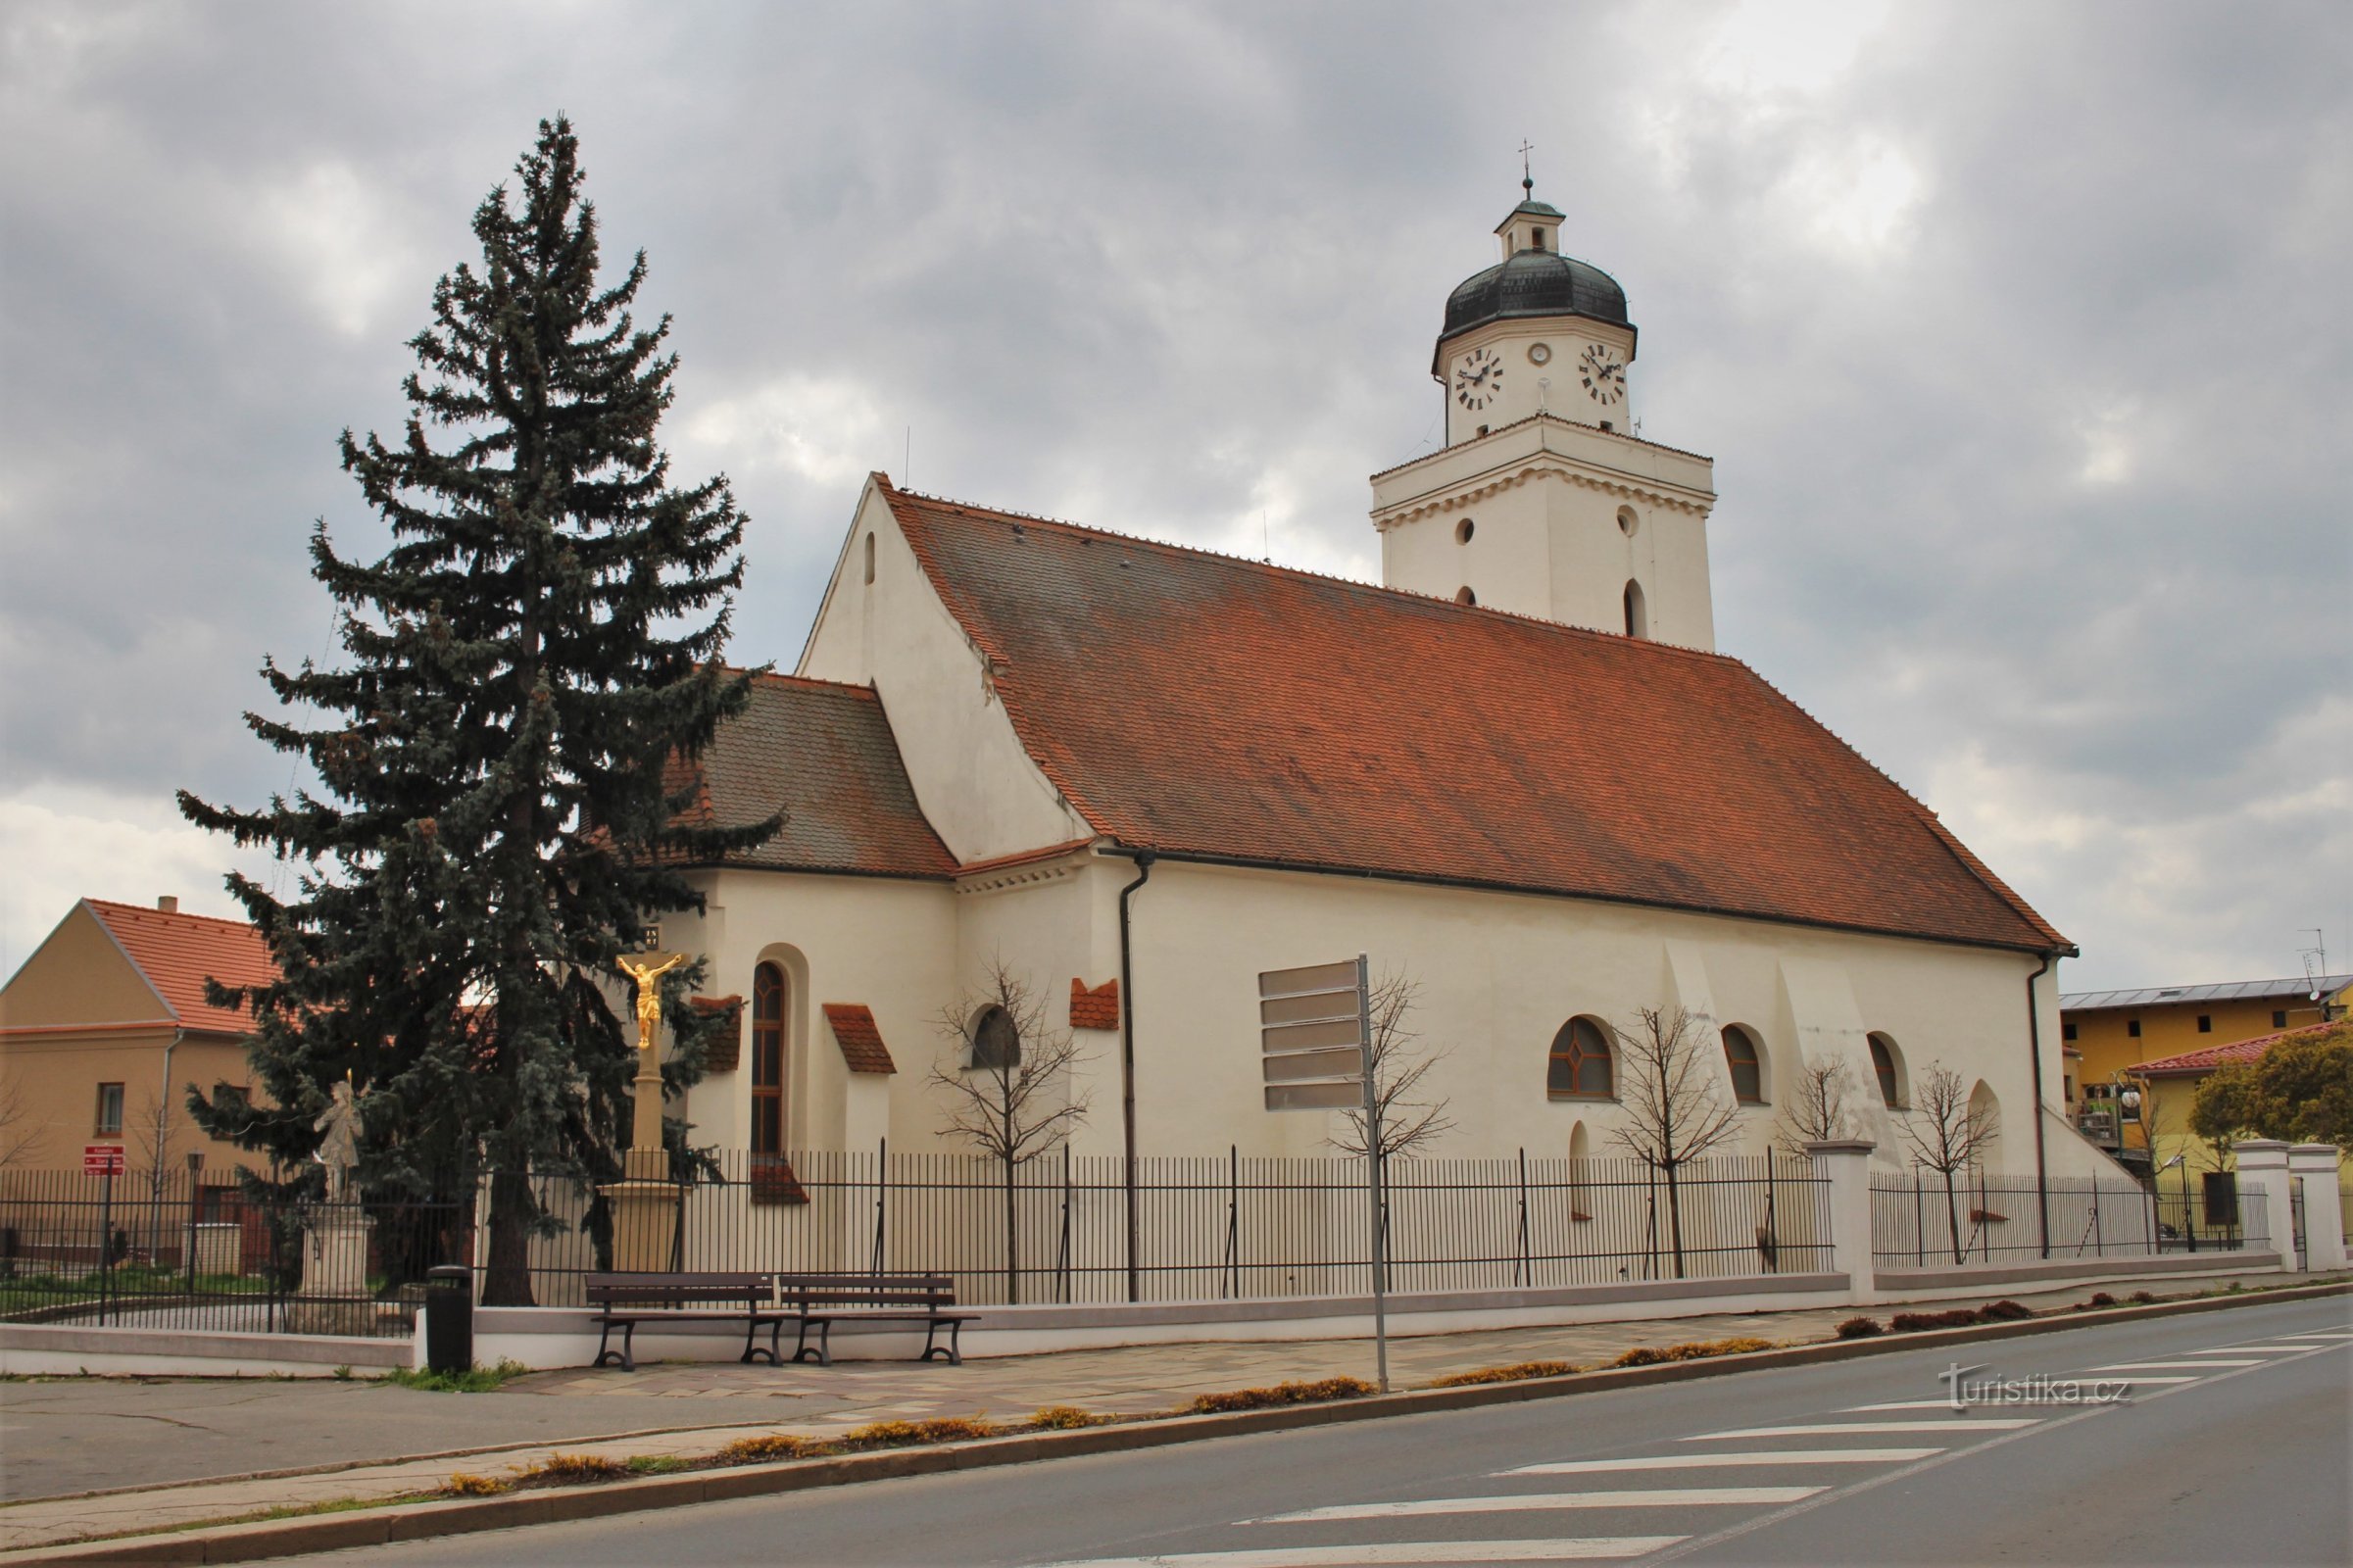 En el centro, la iglesia románica de St. Jacob el Viejo